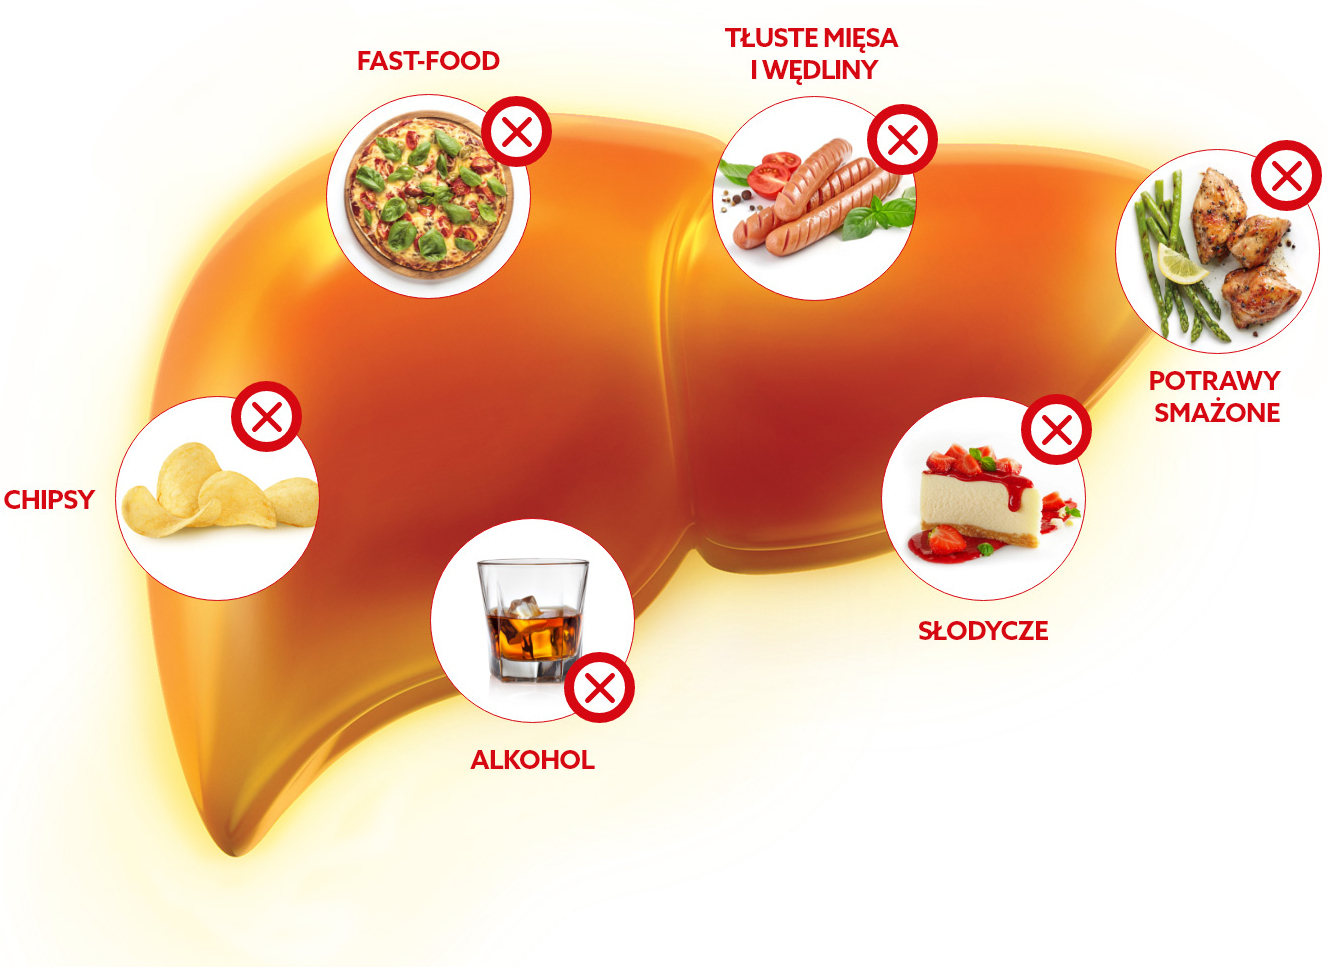 Co szkodzi wątrobie? Fast-food, tłuste mięsa i wędliny, potrawy smażone, słodycze, alkohol, chipsy.